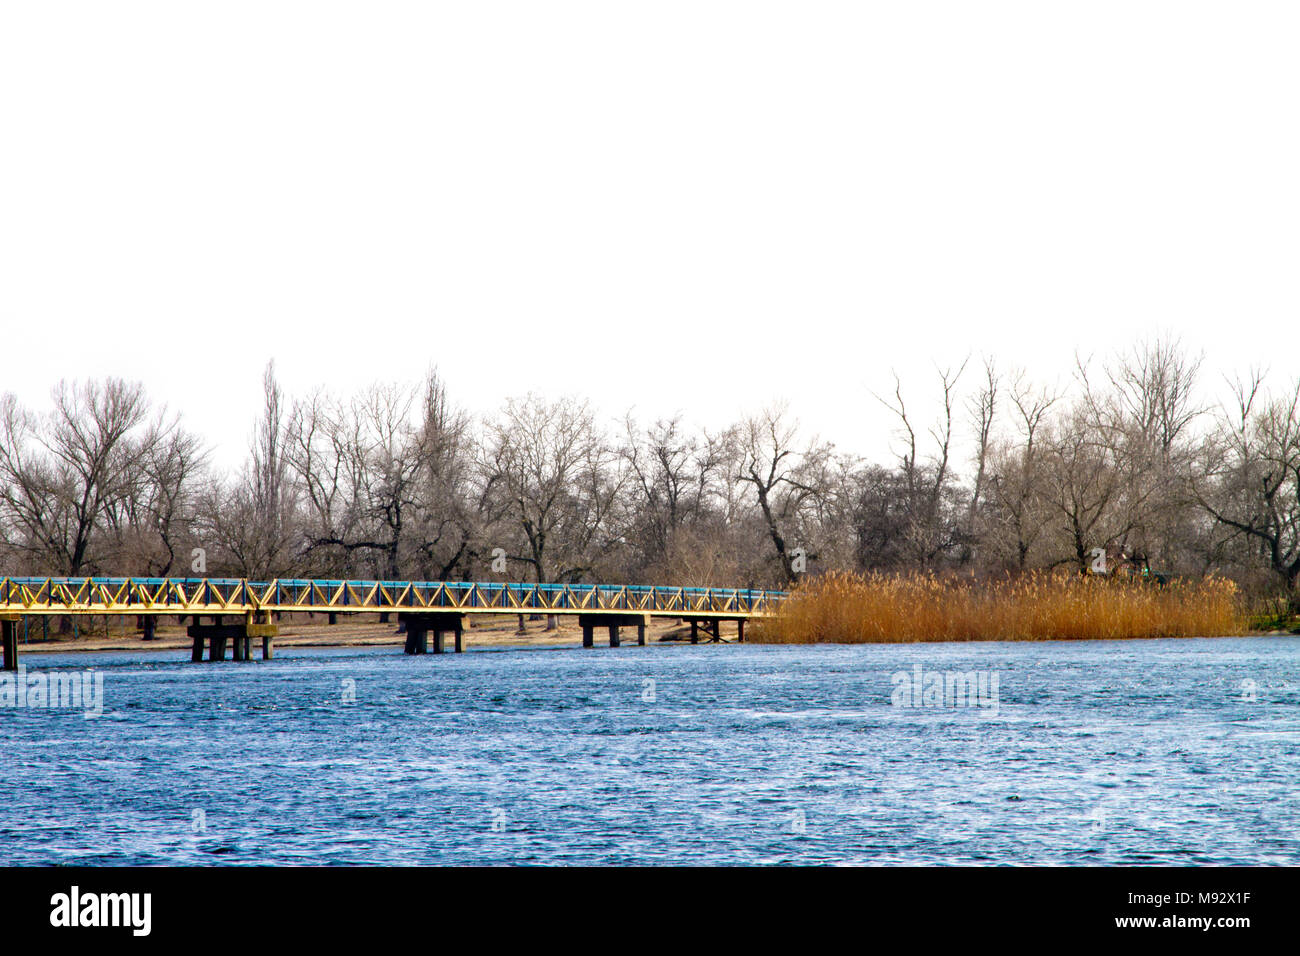 Image d'une passerelle pour piétons à travers une grande rivière Banque D'Images